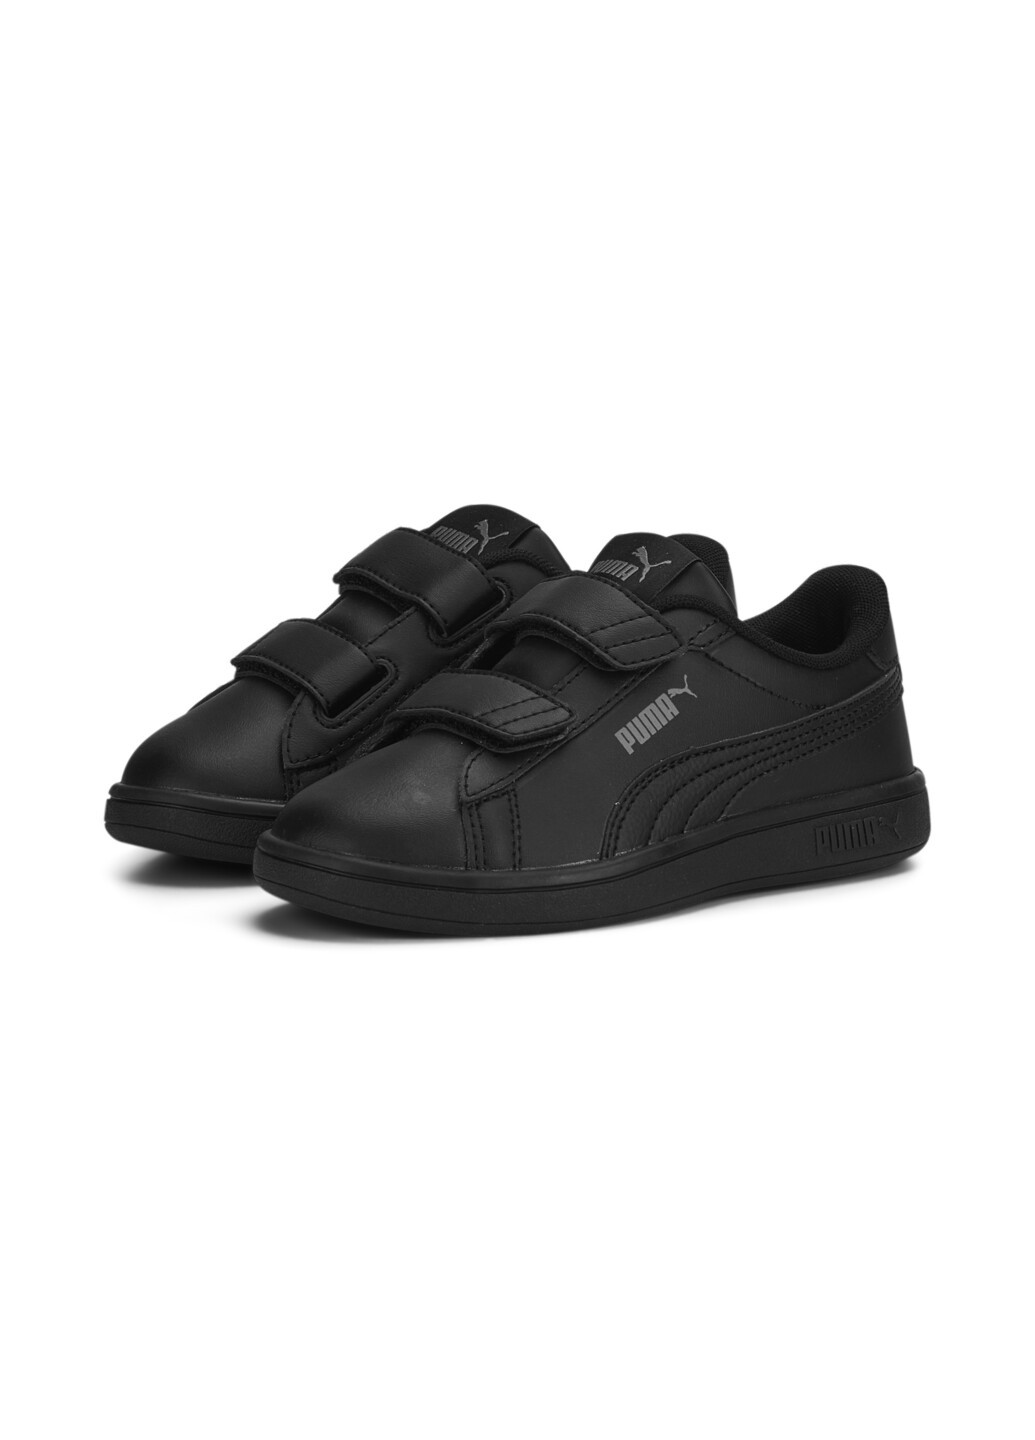 Черные детские кроссовки smash 3.0 leather v sneakers kids Puma